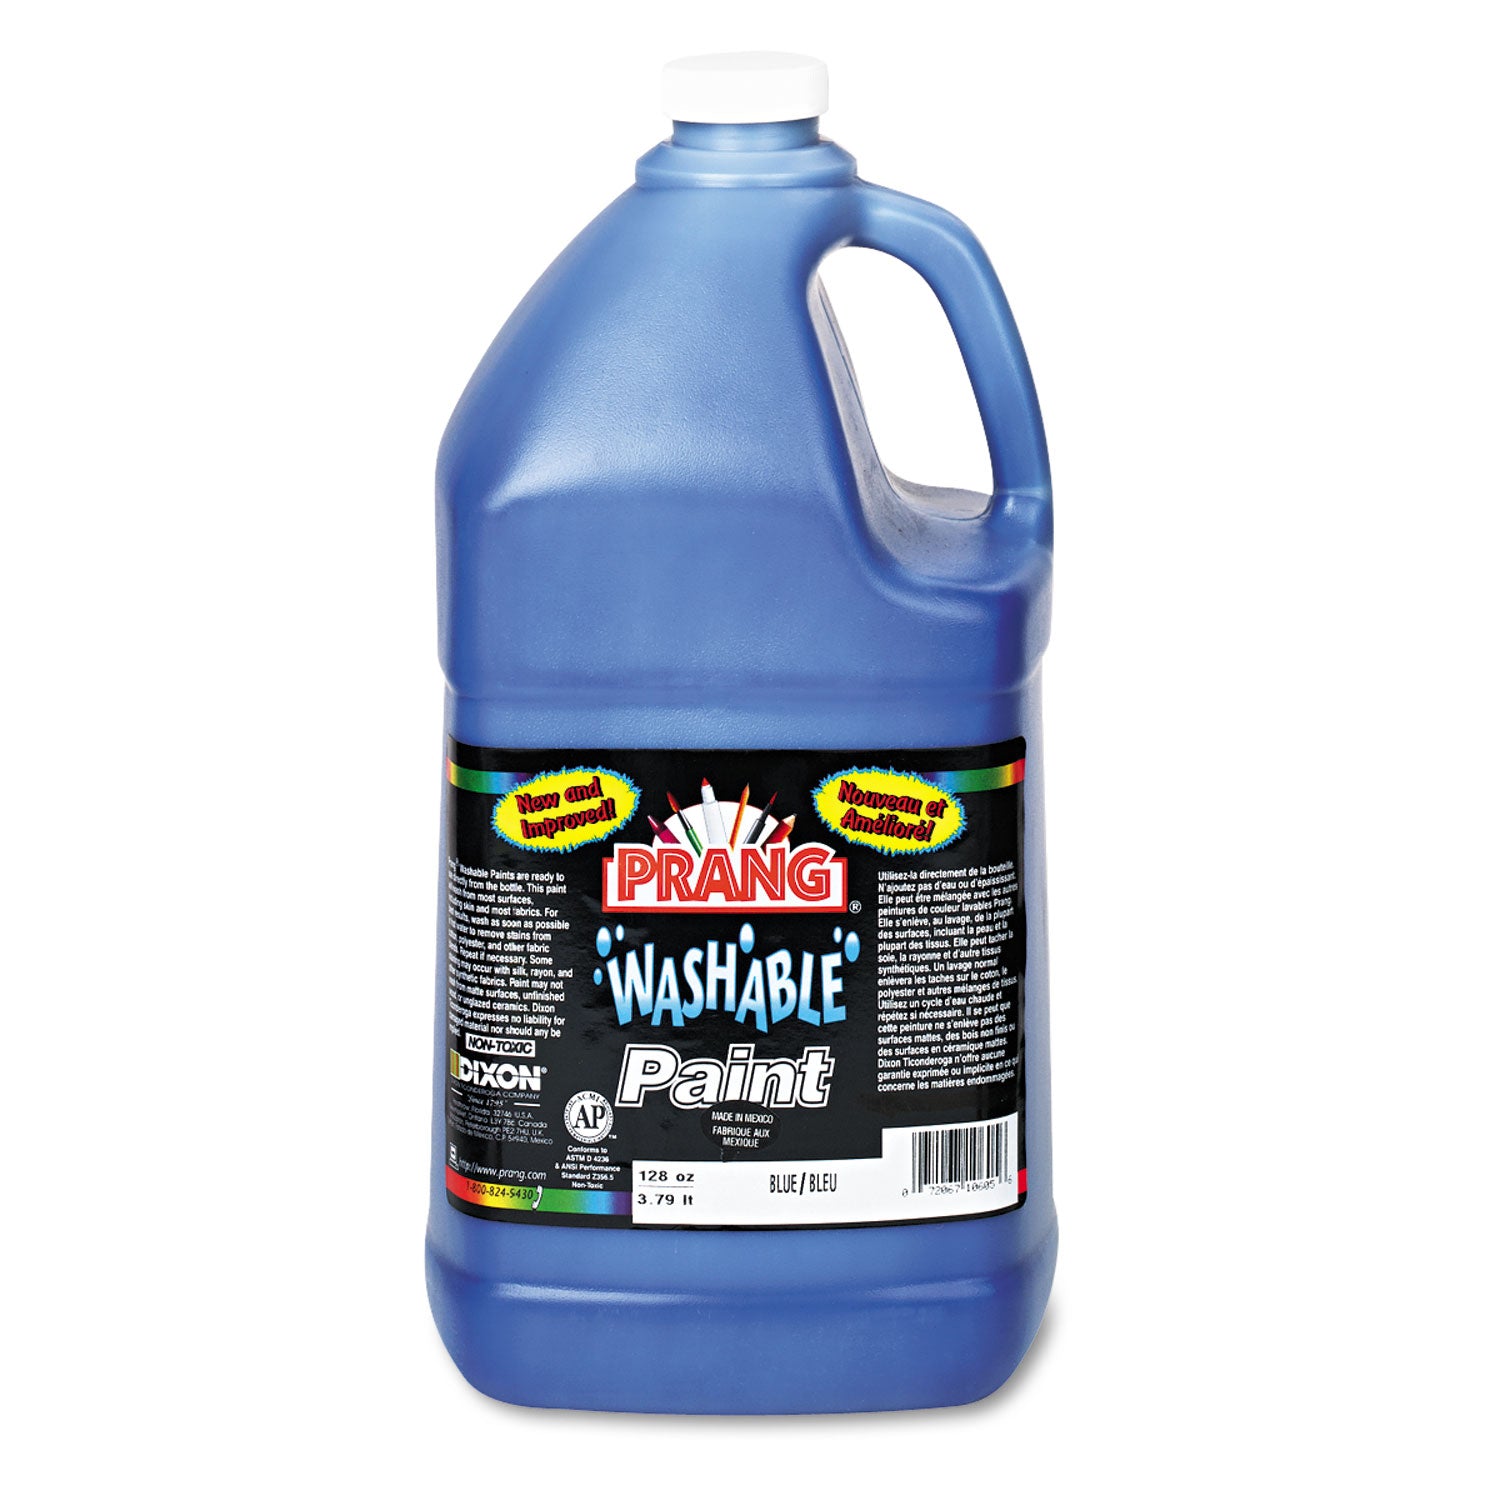 washable-paint-blue-1-gal-bottle_dix10605 - 1